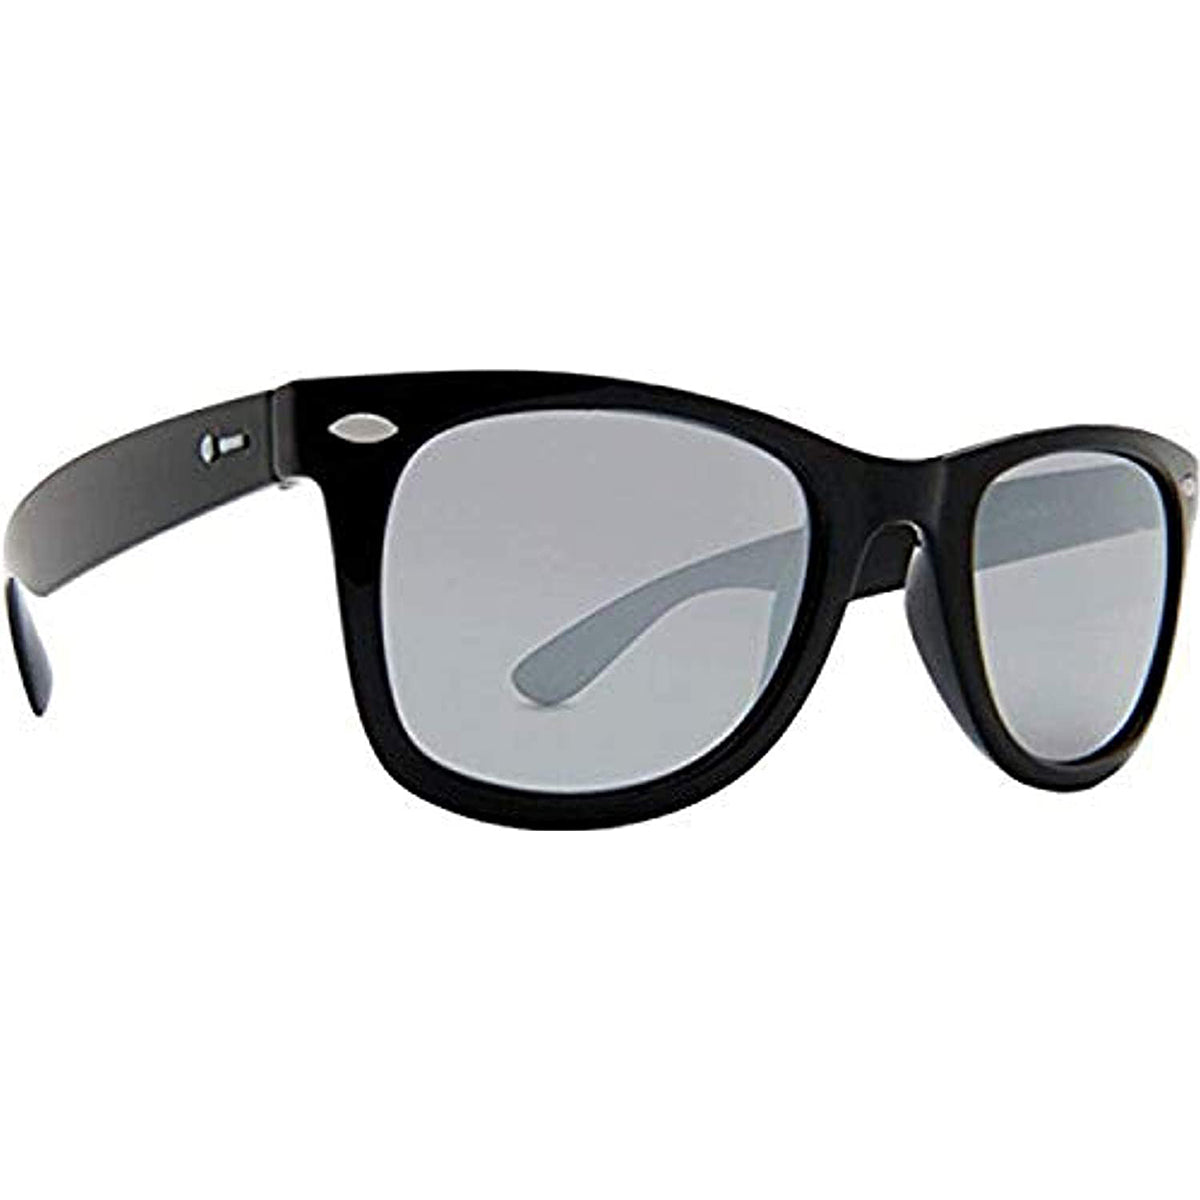 Dot Dash Plimsoul Men's Lifestyle Sunglasses-DSVTFPLI